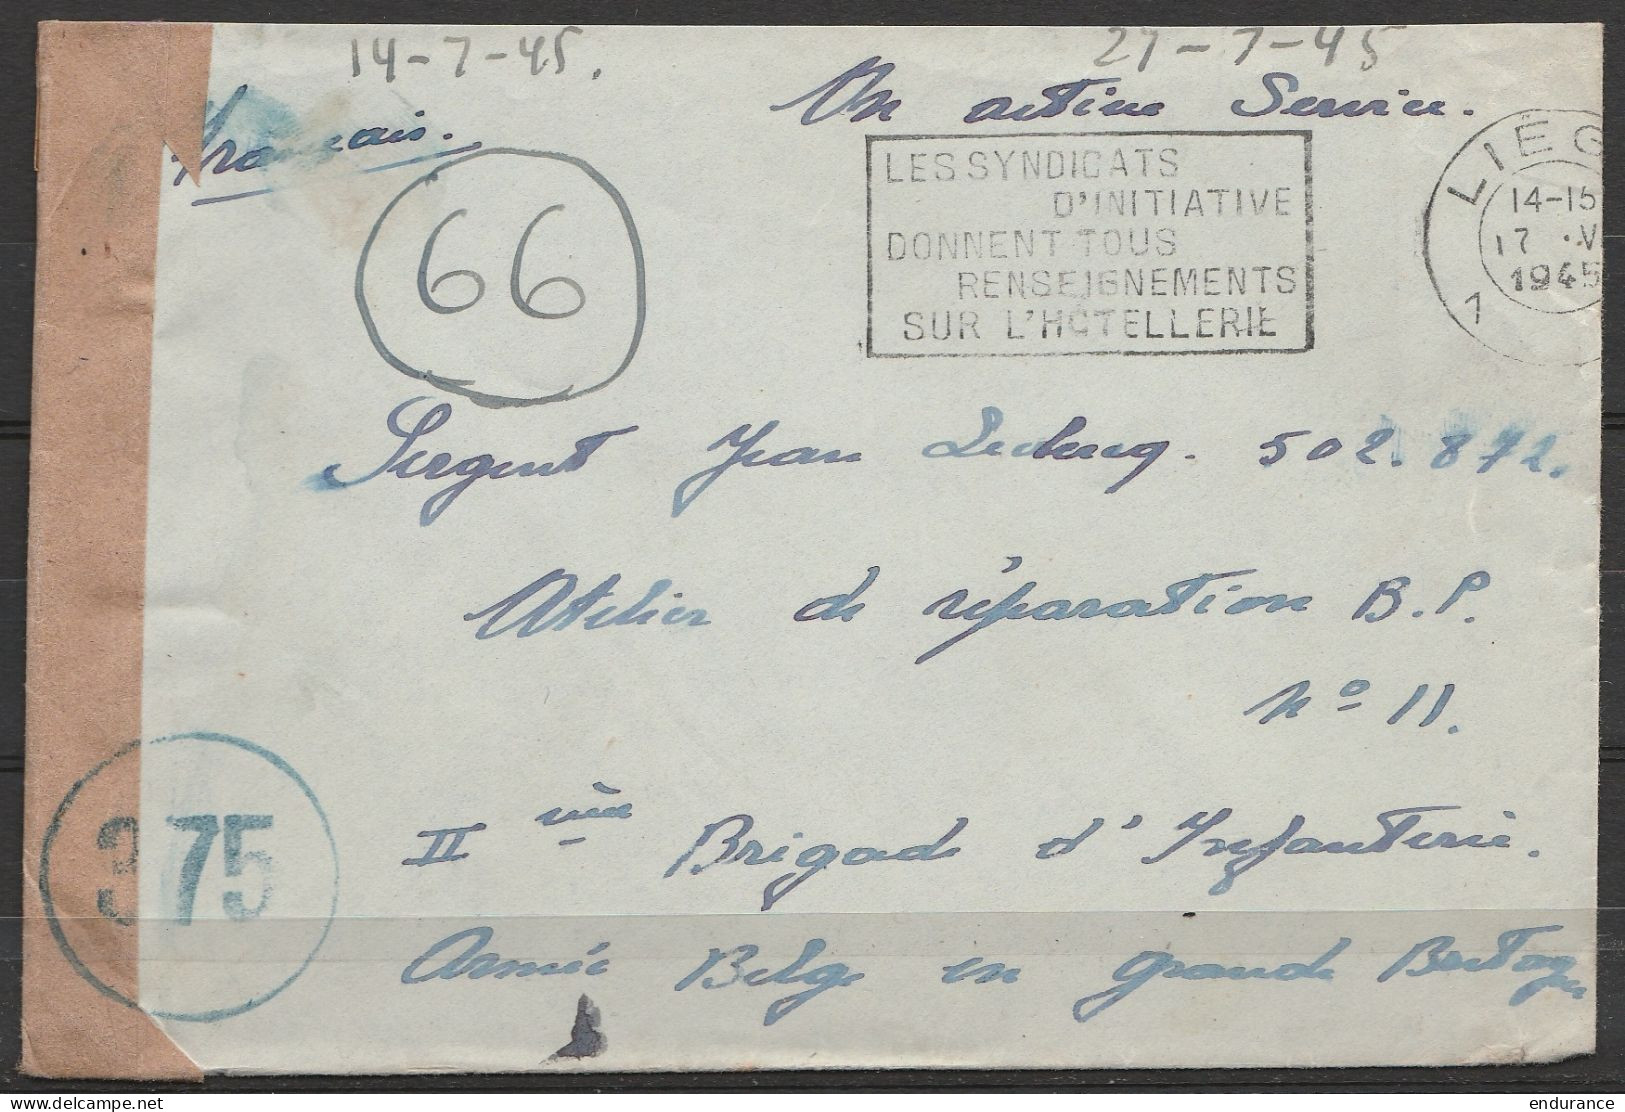 LSC (sans Texte) Franchise S.M. Flam. LIEGE /17.V.1945 Pour Sergent Brigade D'Infanterie Armée Belge En Grande Bretagne  - Guerre 40-45 (Lettres & Documents)